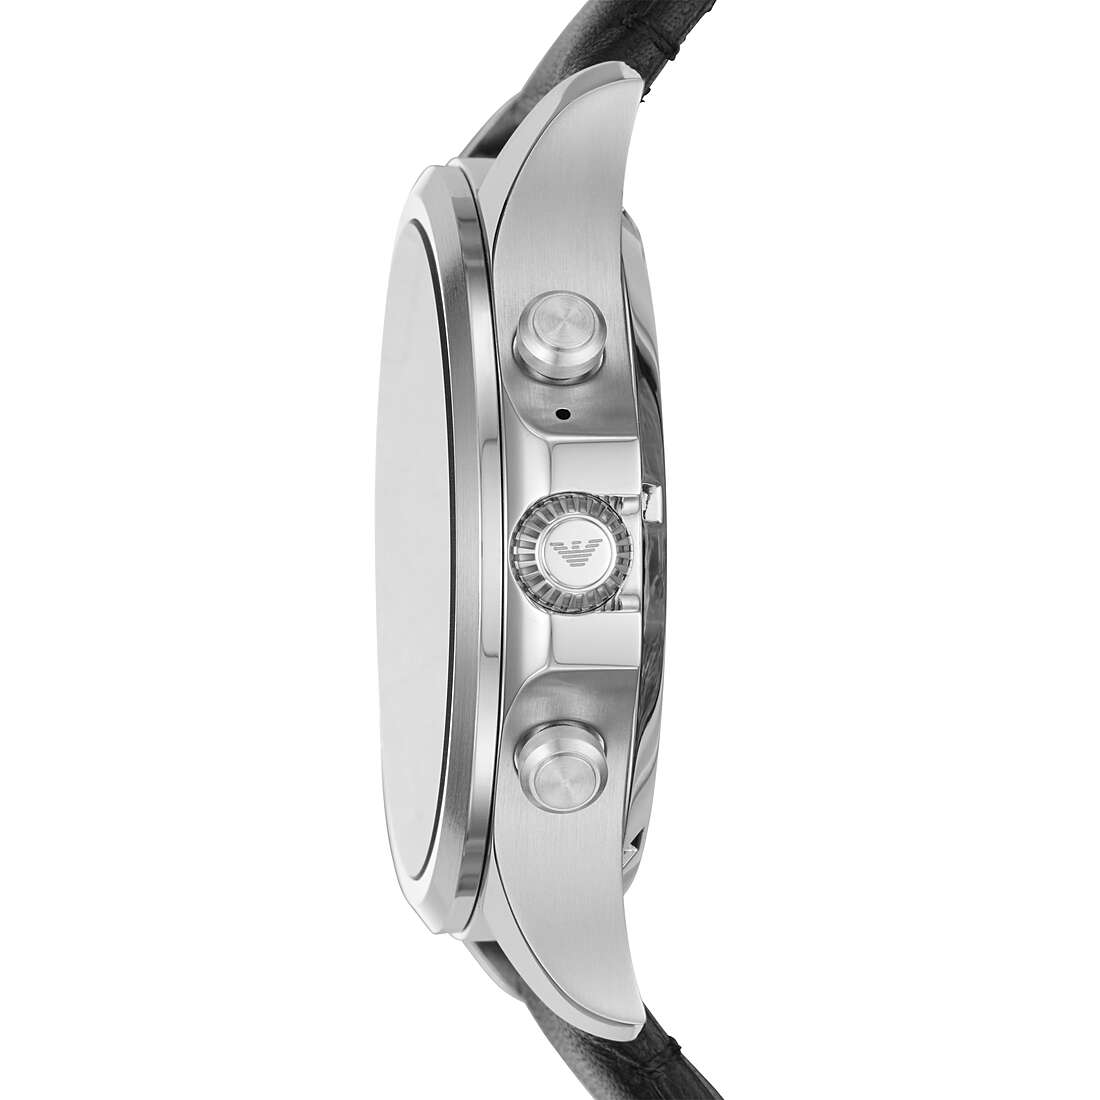 Uhr Smartwatch mann Emporio Armani ART5003